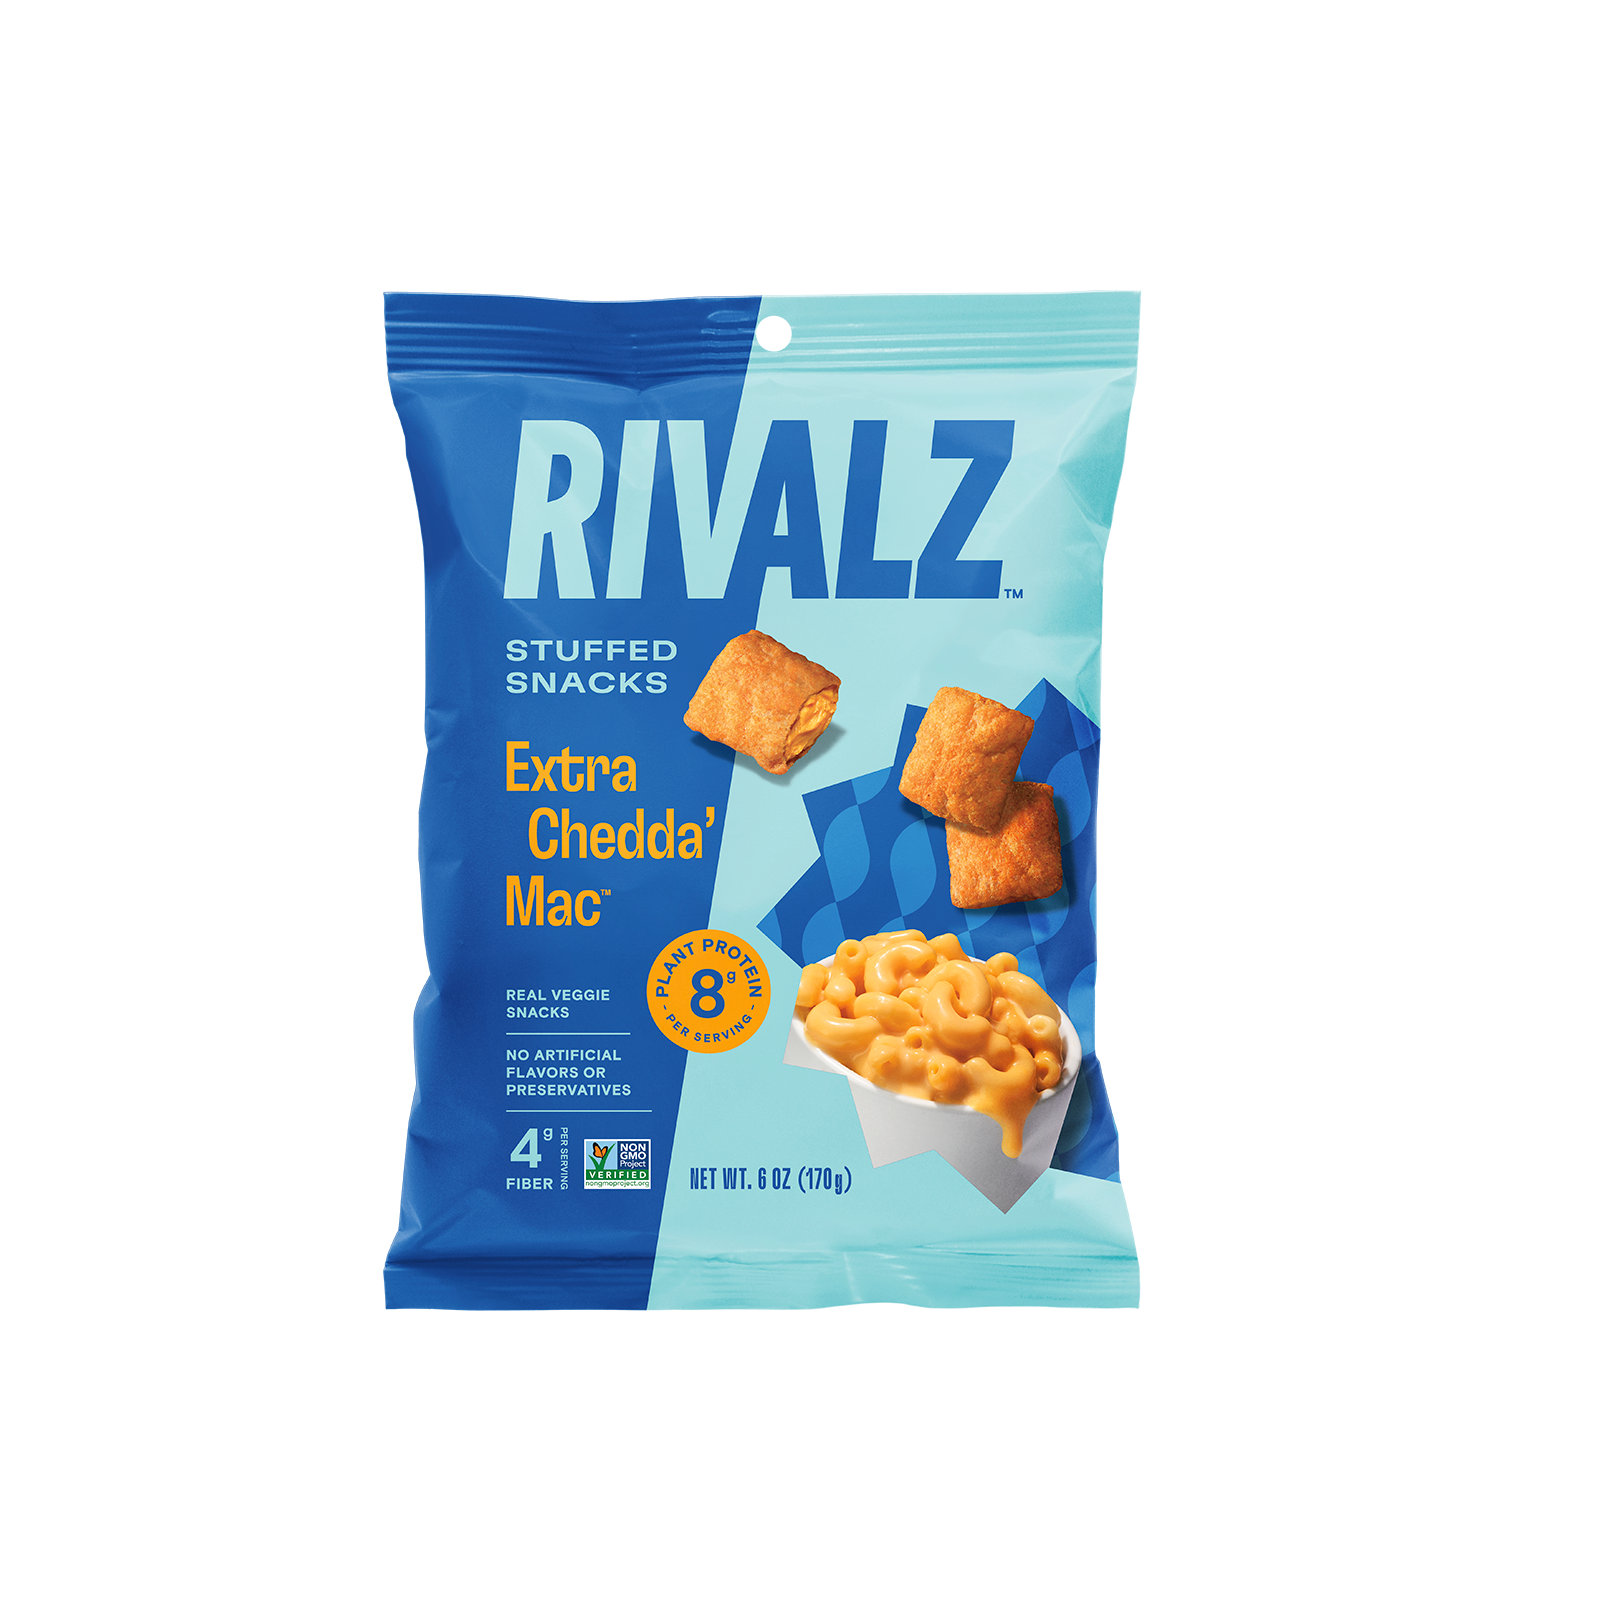 Stuffed Protein Snacks by Rivalz Snacks - Extra Chedda' Mac